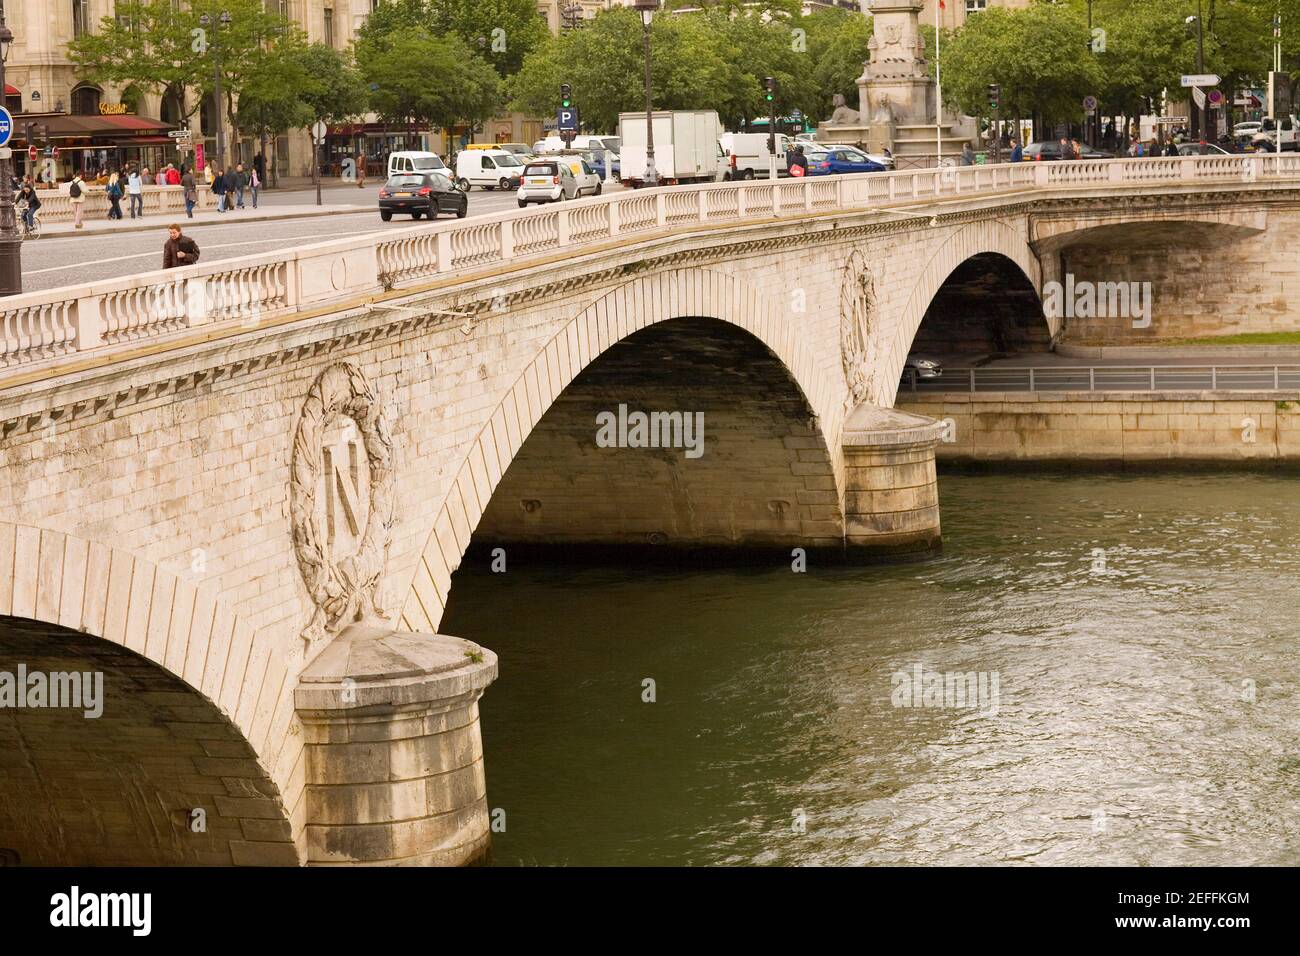 Arch bridge over a river, Seine River, Paris, France Stock Photo